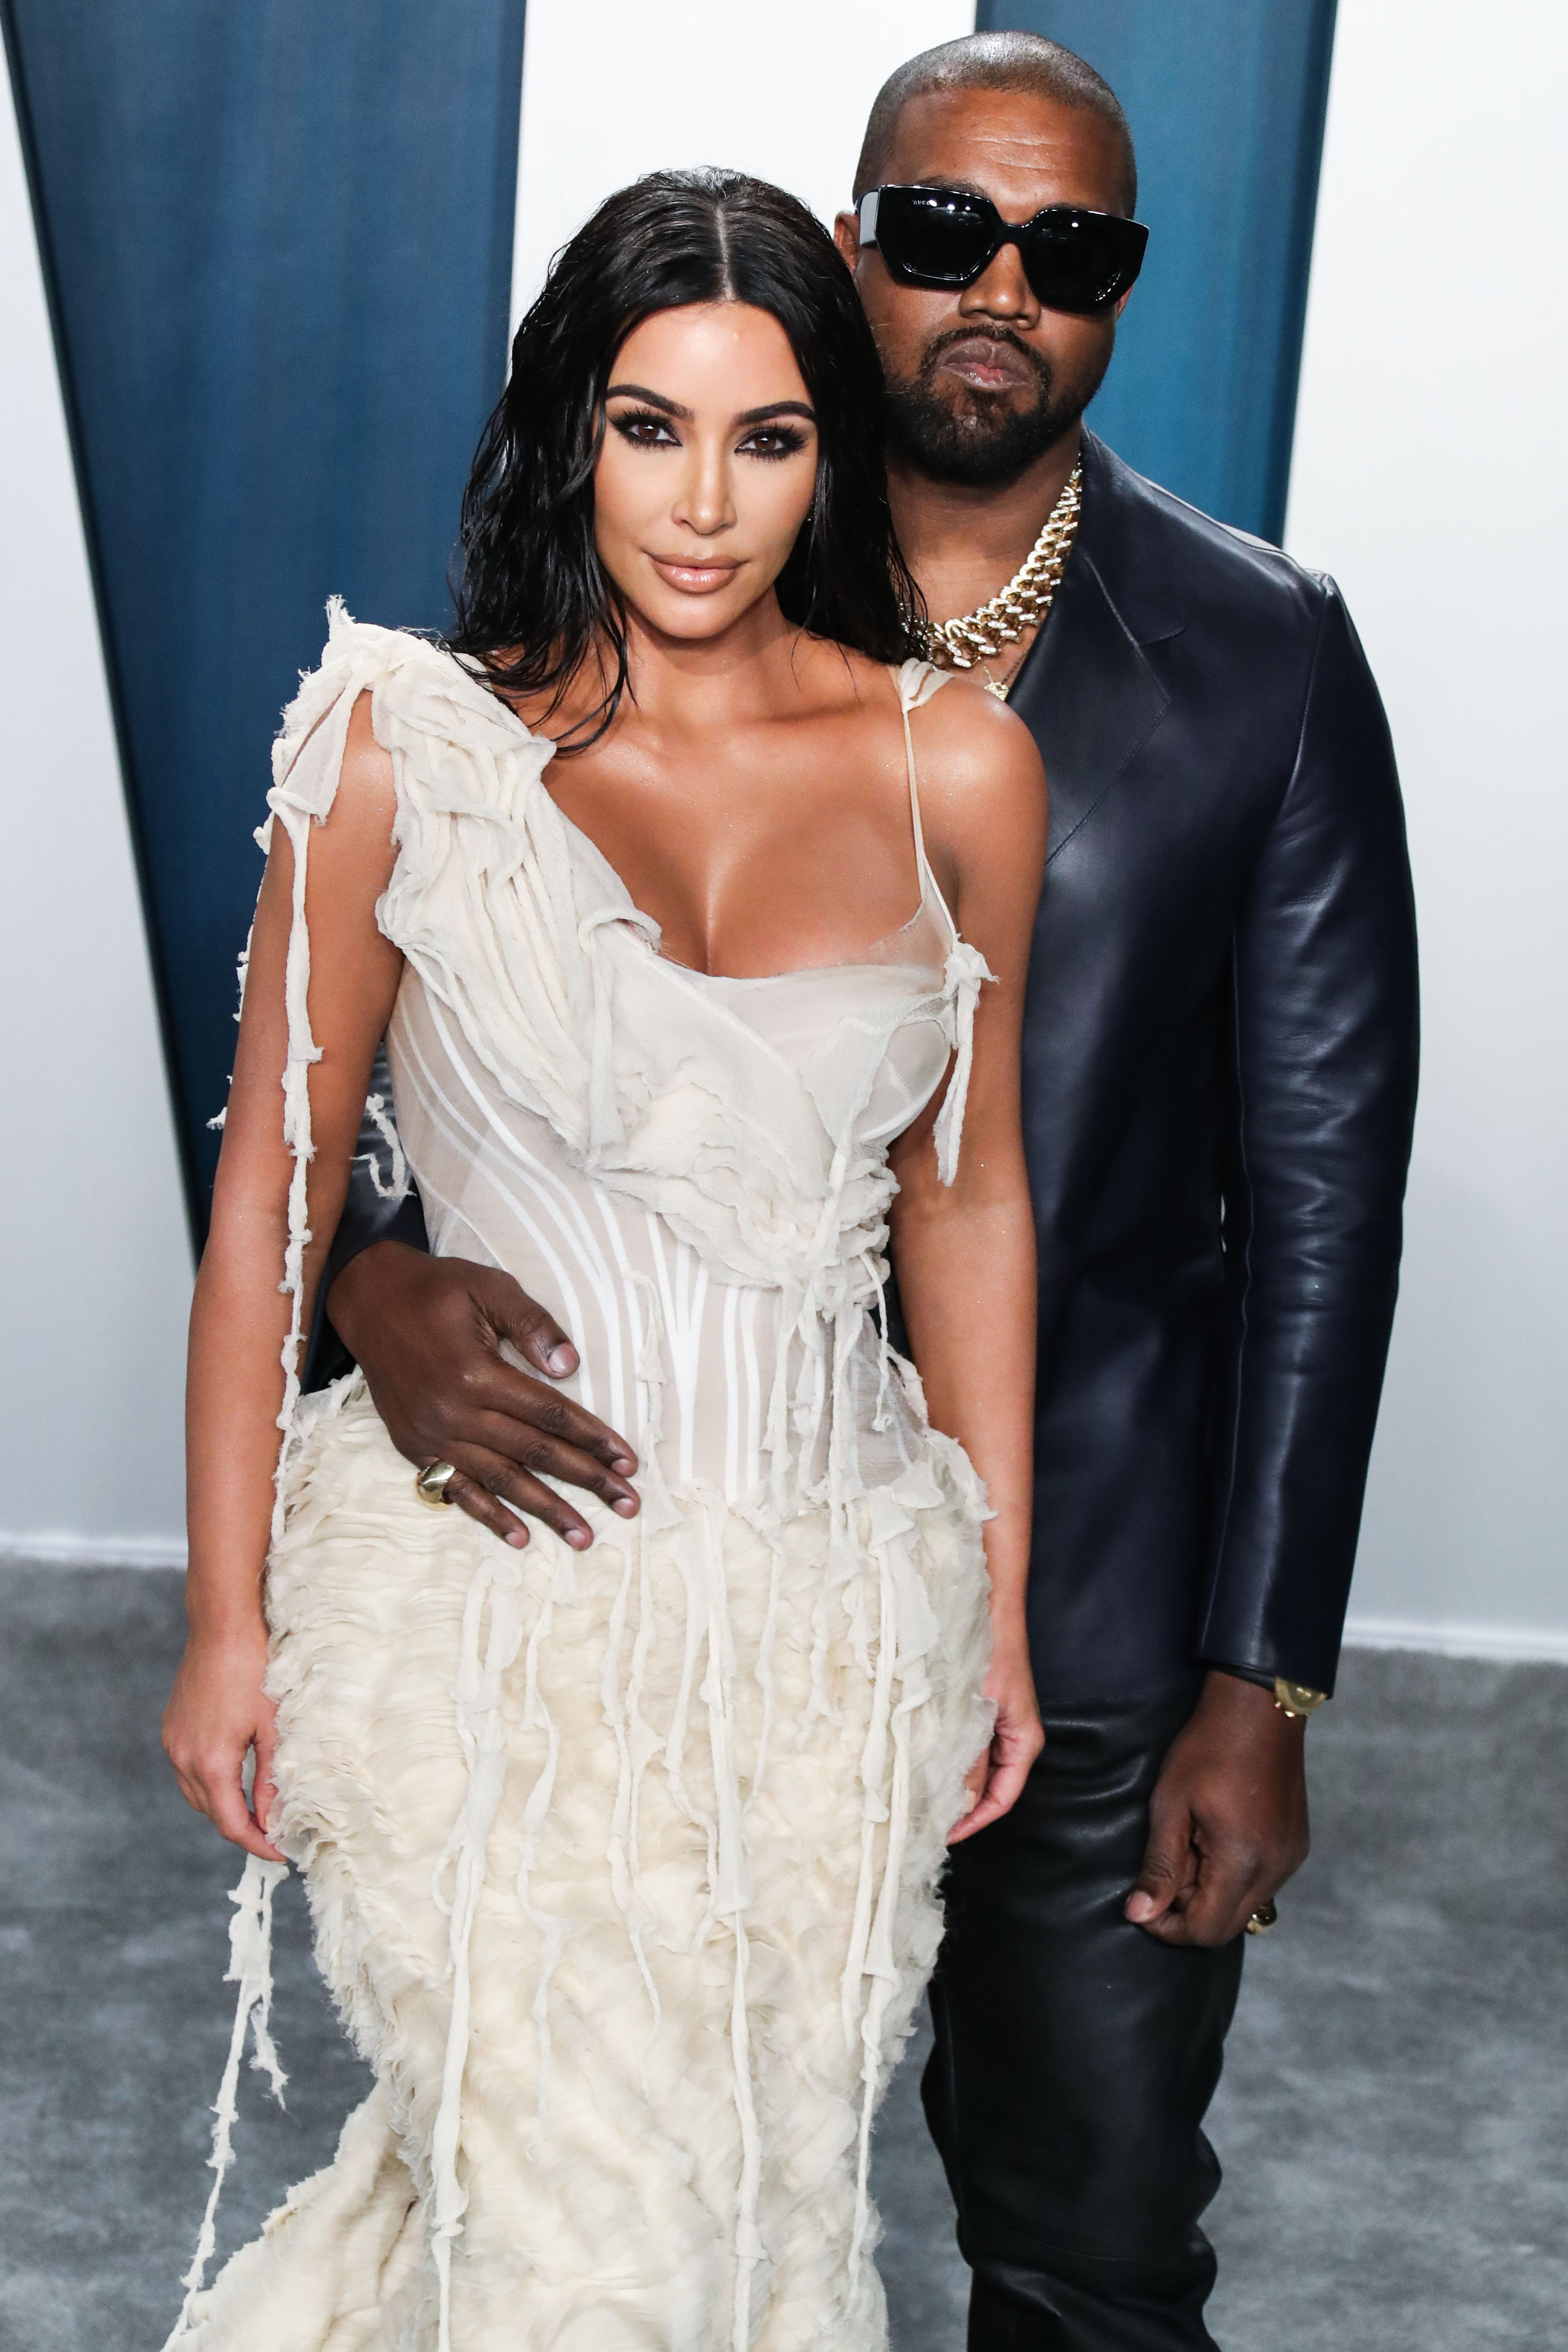 Ο Kanye West ανακοίνωσε ότι η σύζυγός του είναι πλέον δισεκατομμυριούχος μετά την πώληση των KKW Beauty!